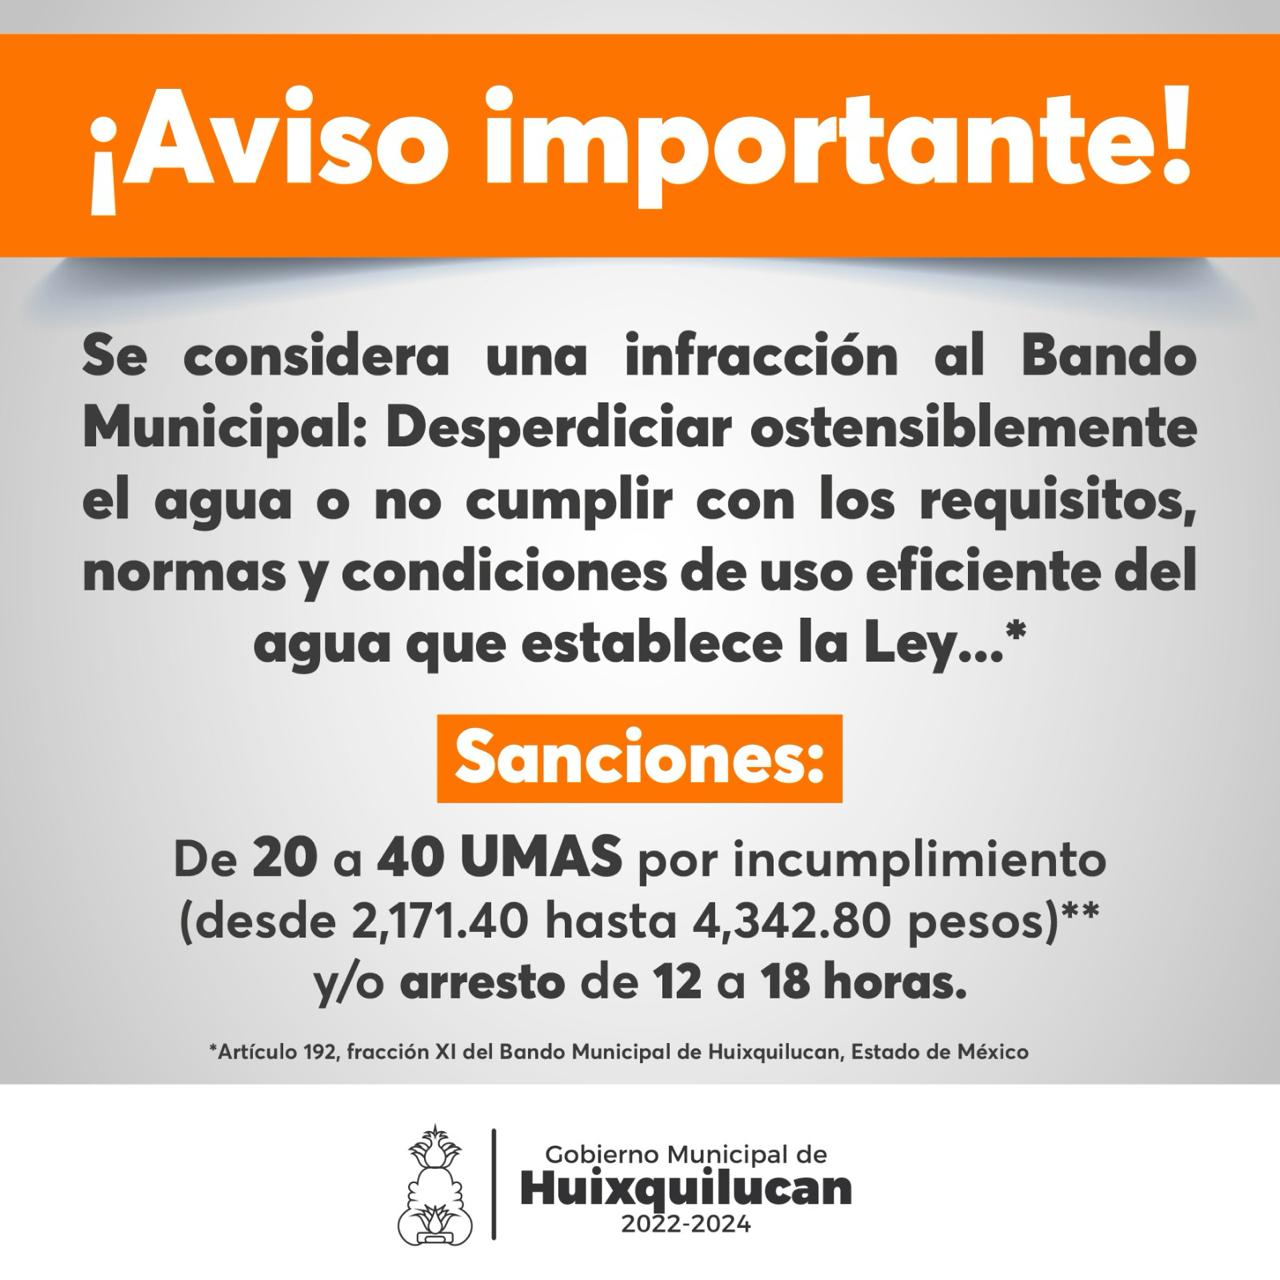 Sanción y detención por desperdiciar agua en Huixquilucan